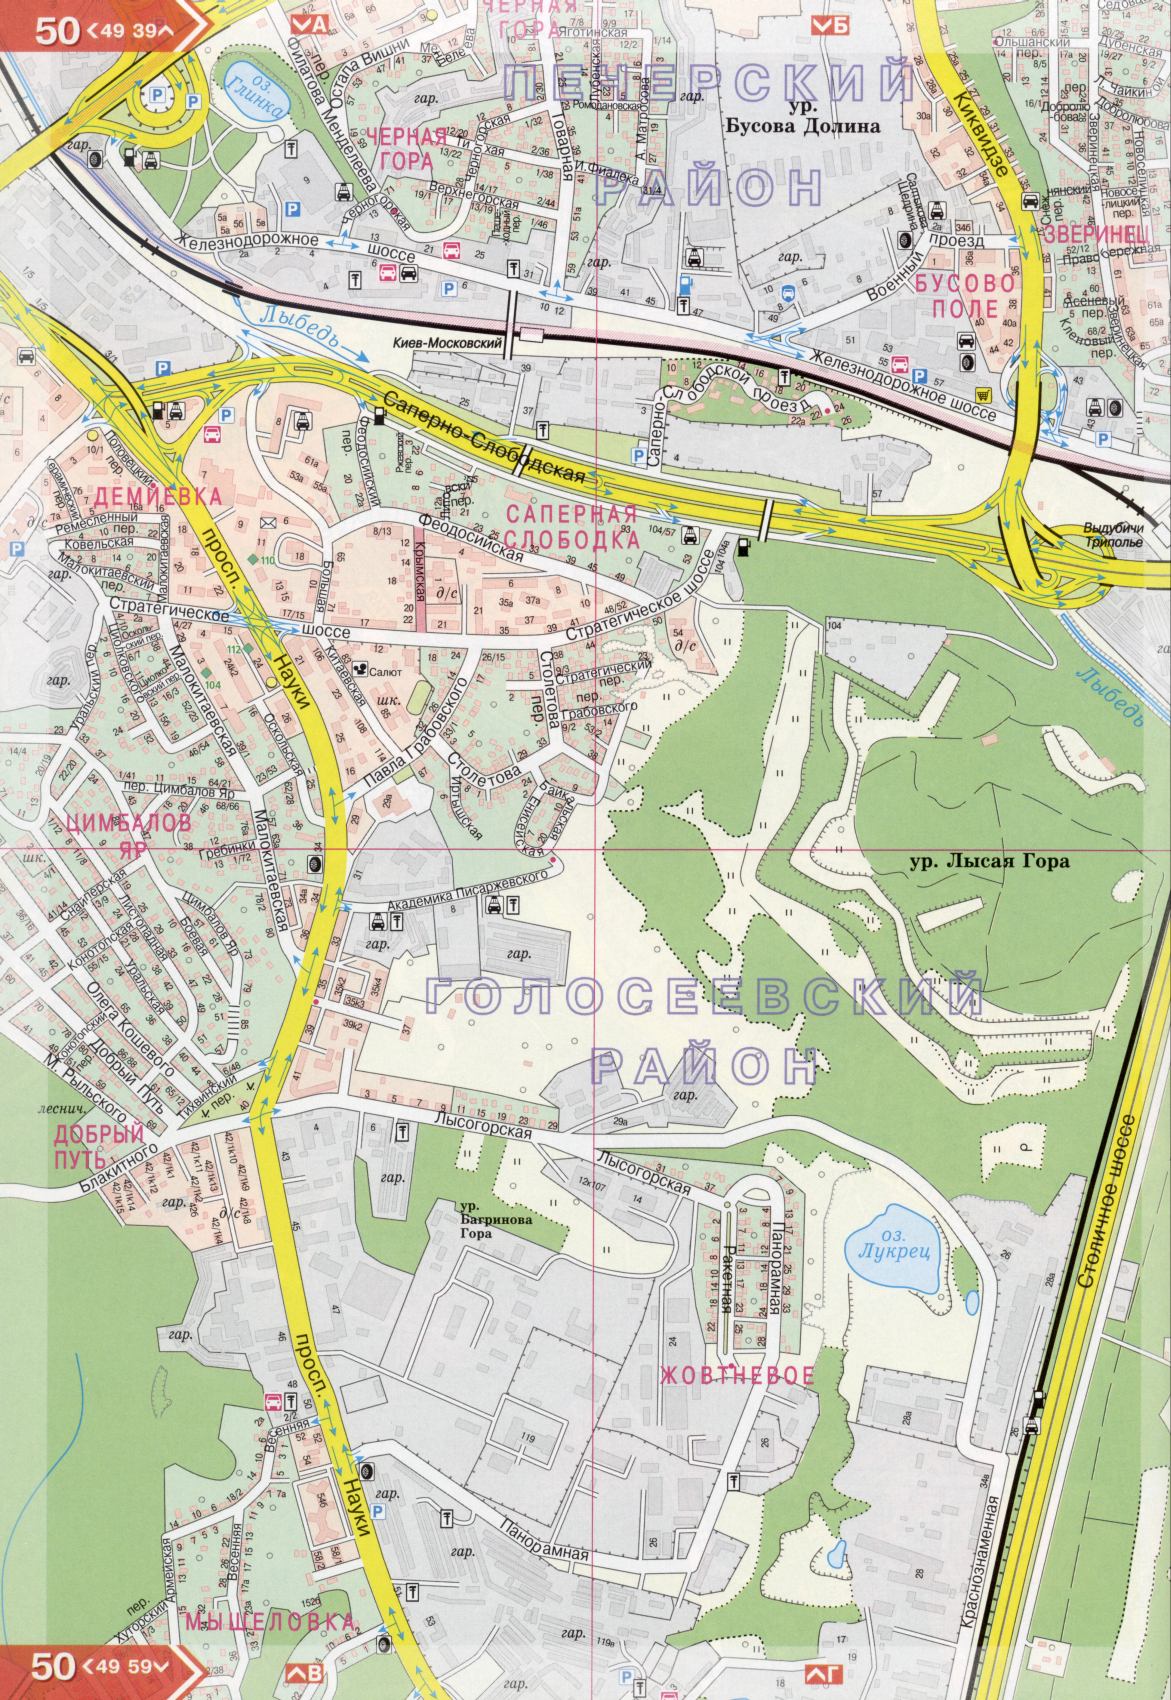 Карта Киева подробная в 1см=150м на 45 листах. Карта г.Киев из атласа автомобильных дорог. Скачать бесплатно подробную карту , F4